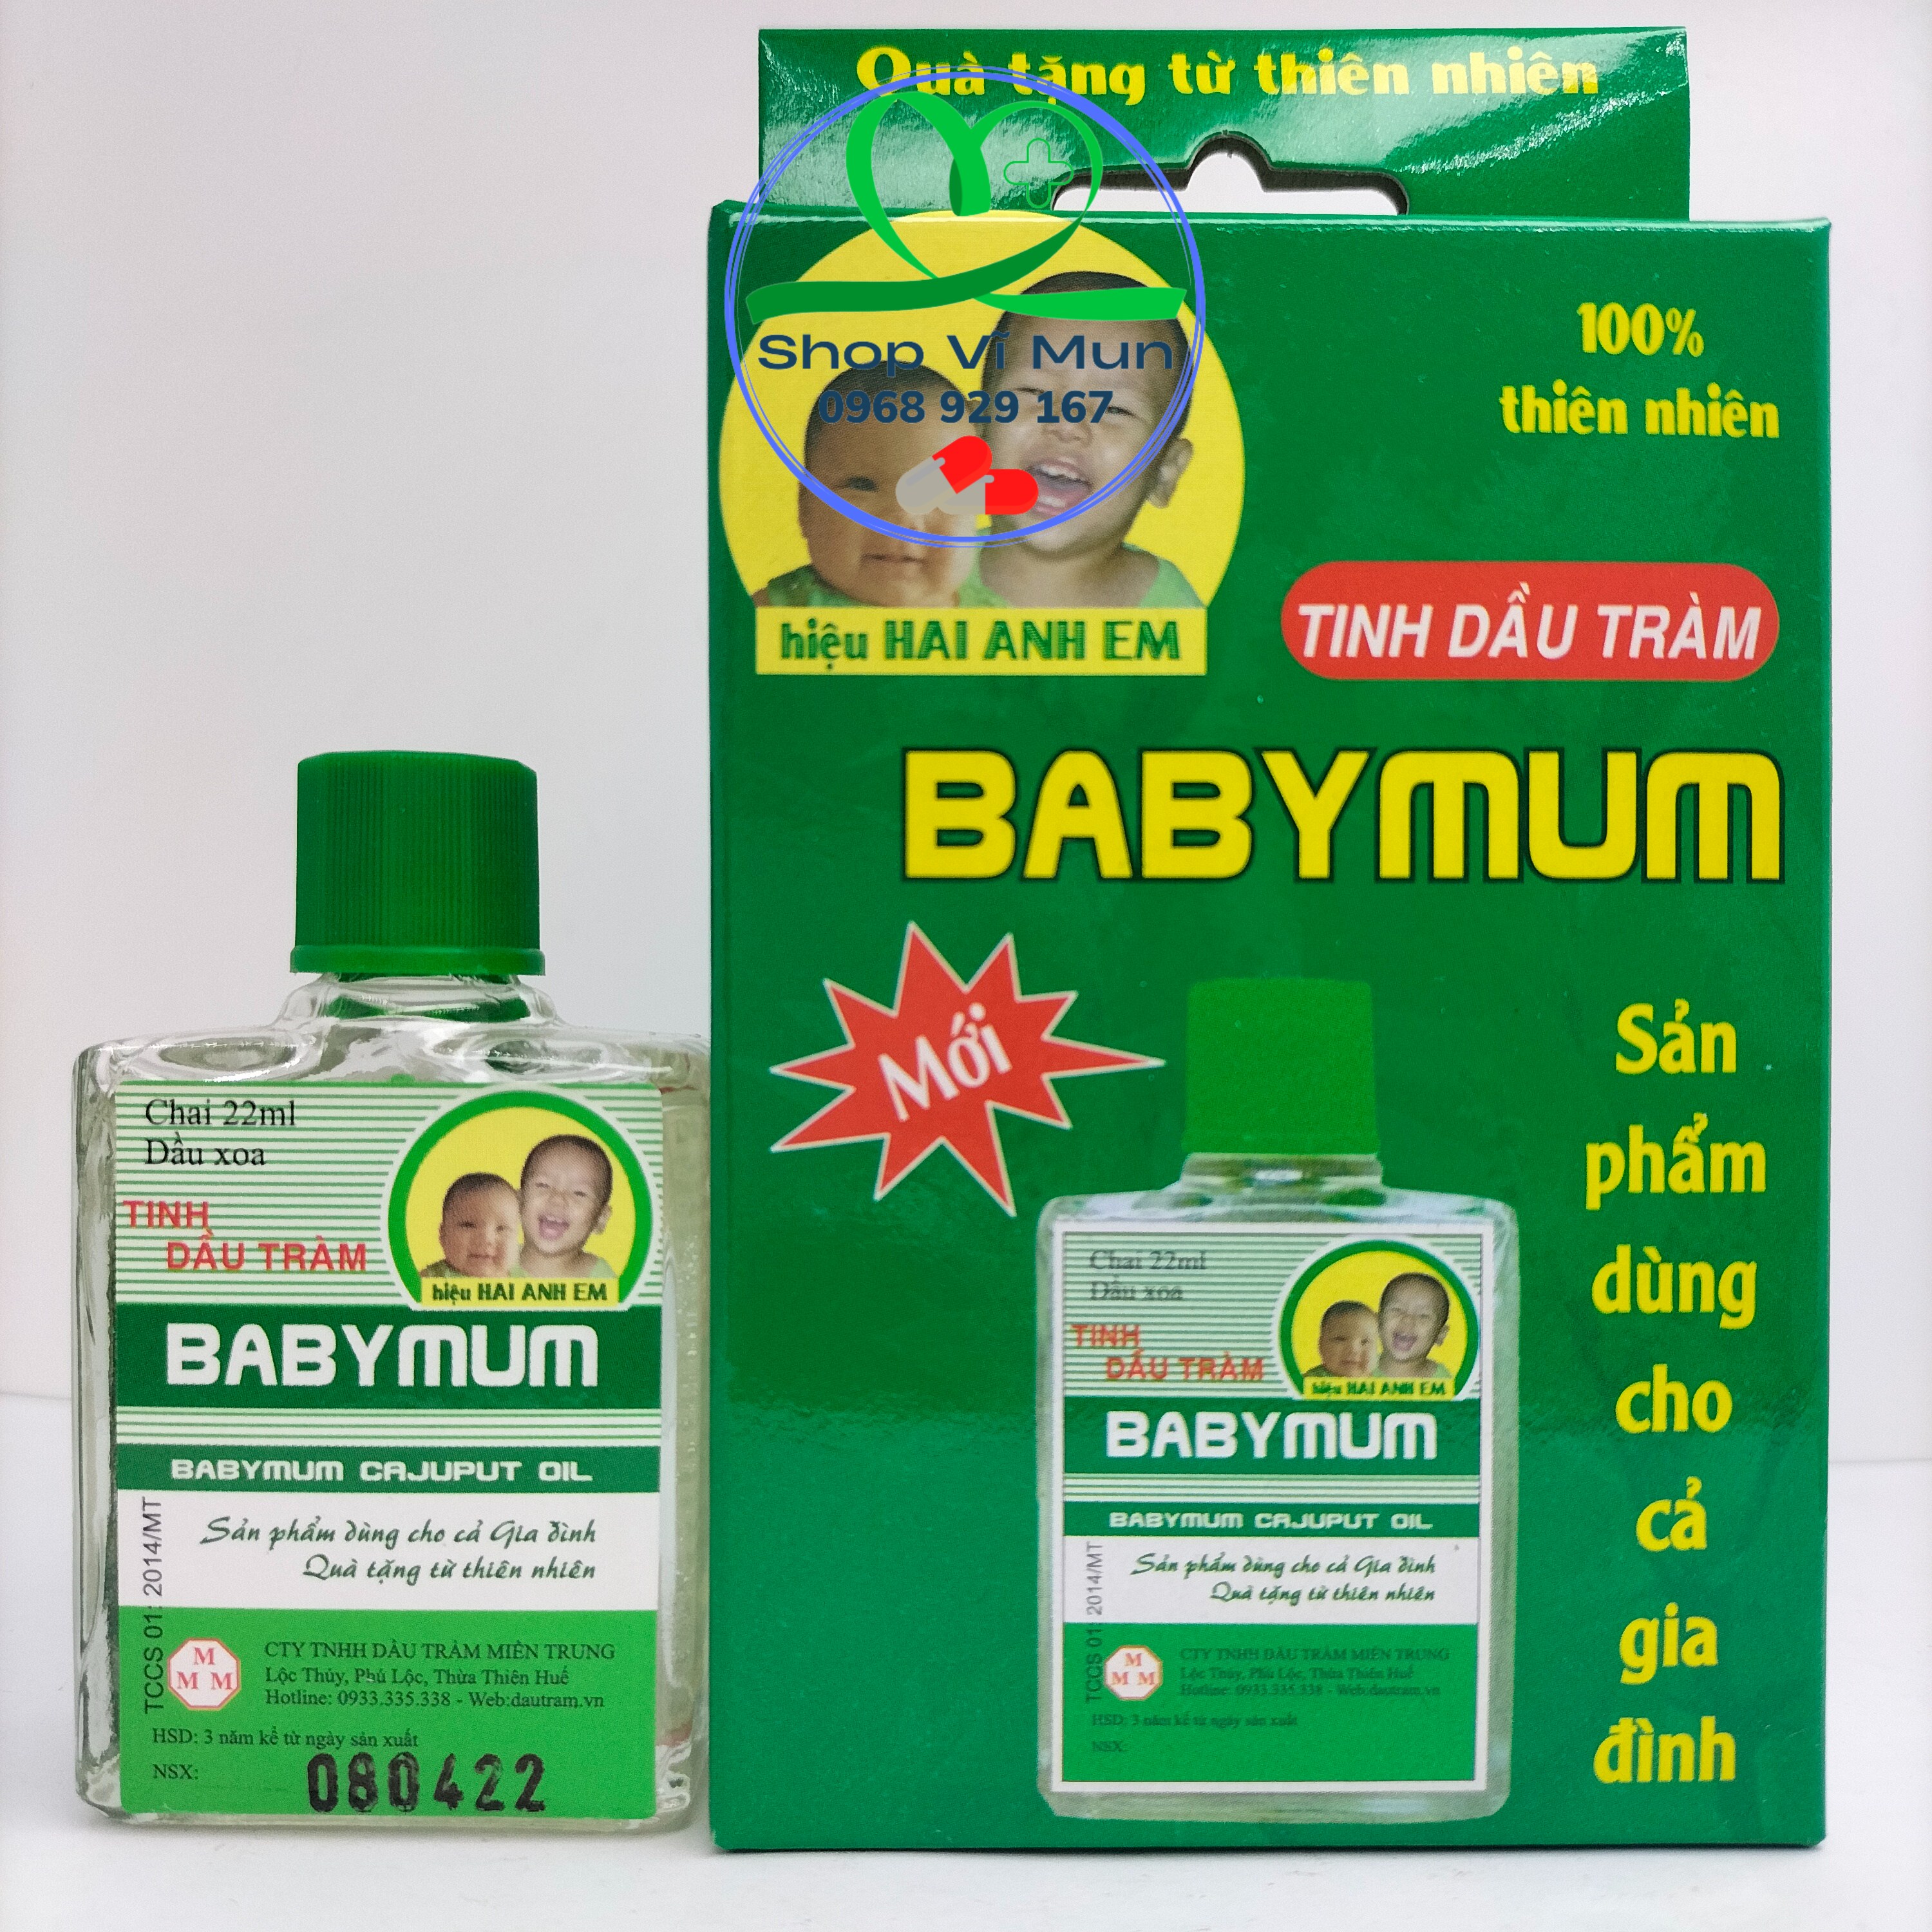 Tinh dầu tràm Babymum 100% thiên nhien